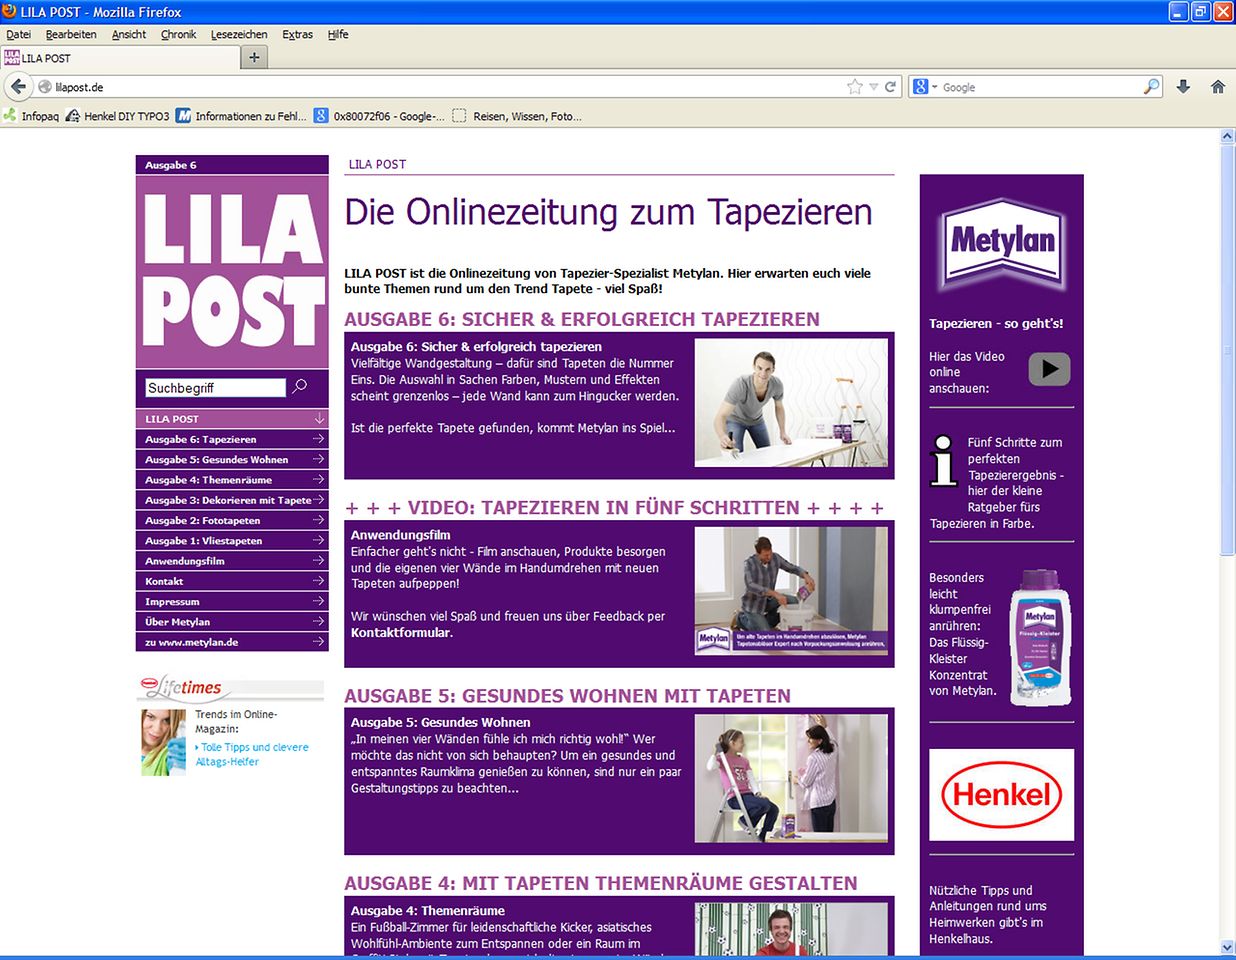 Die neue Ausgabe des Online-Magazins rund ums Tapezieren gibt's ab sofort auf www.lilapost.de